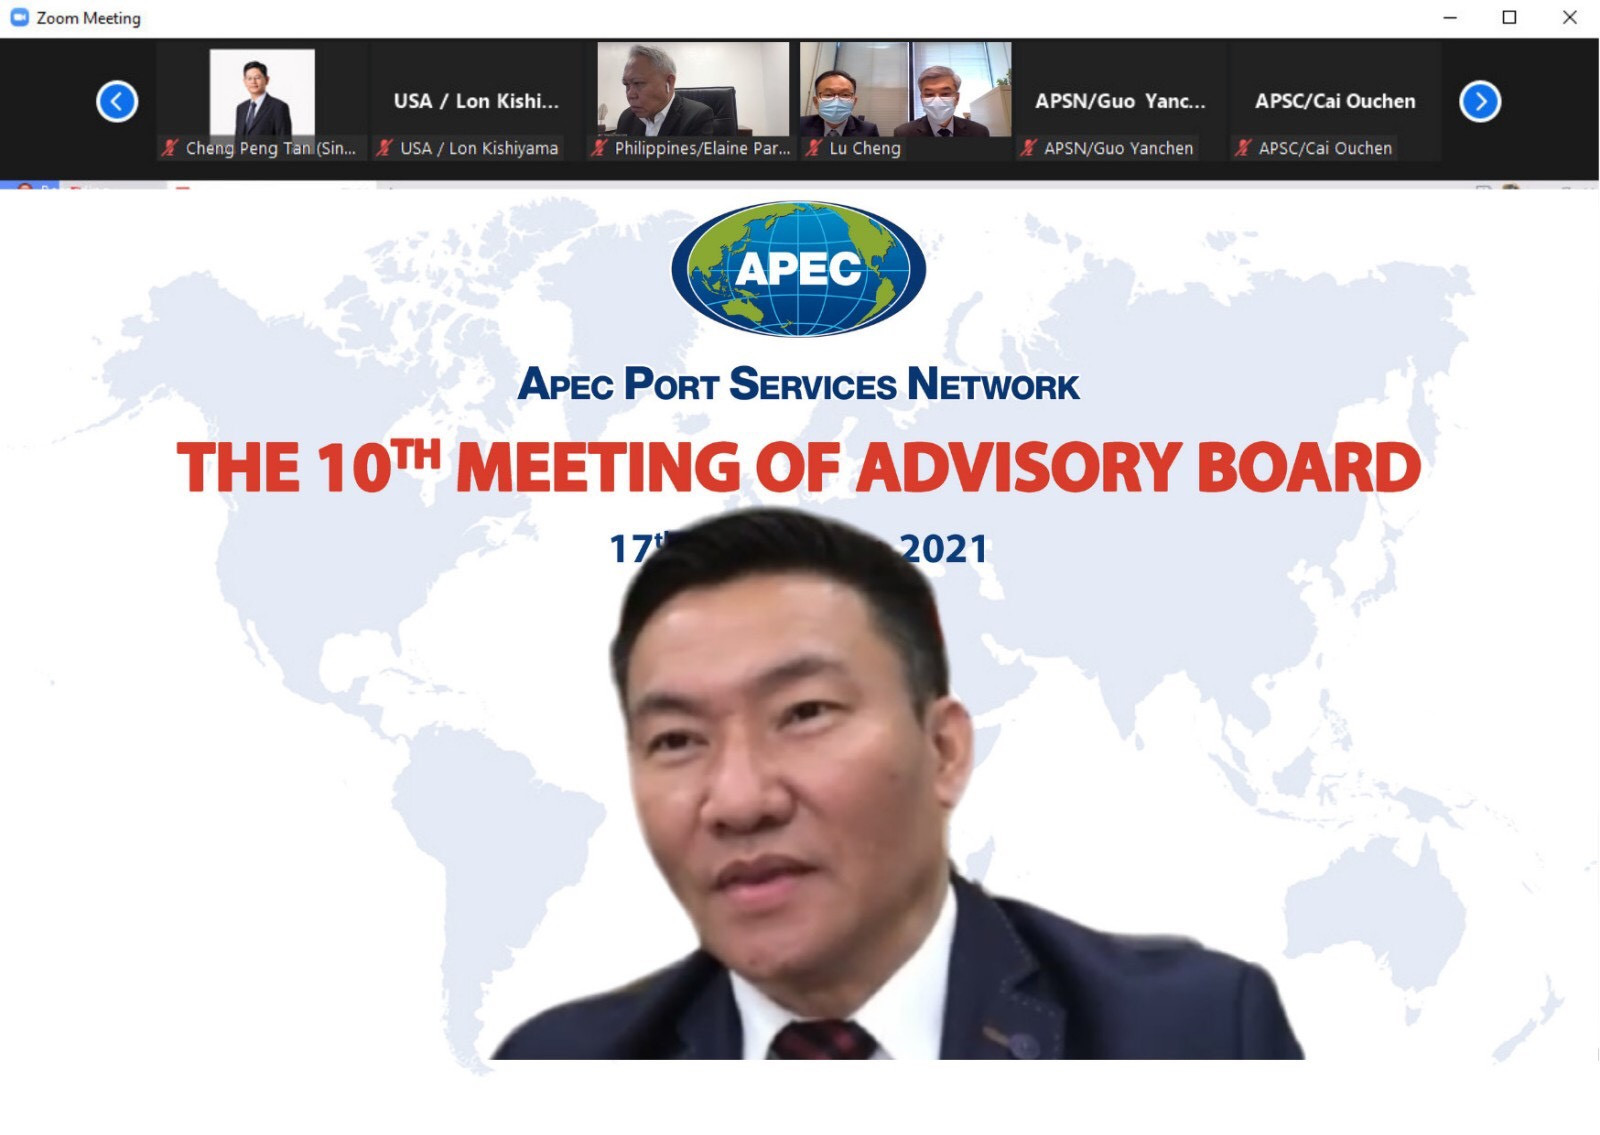 Ông Bùi Văn Quỳ - Phó Tổng Giám đốc Tổng Công ty Tân Cảng Sài Gòn tiếp tục giữ vị trí Chủ tịch Hội đồng Cố vấn Cảng biển APEC